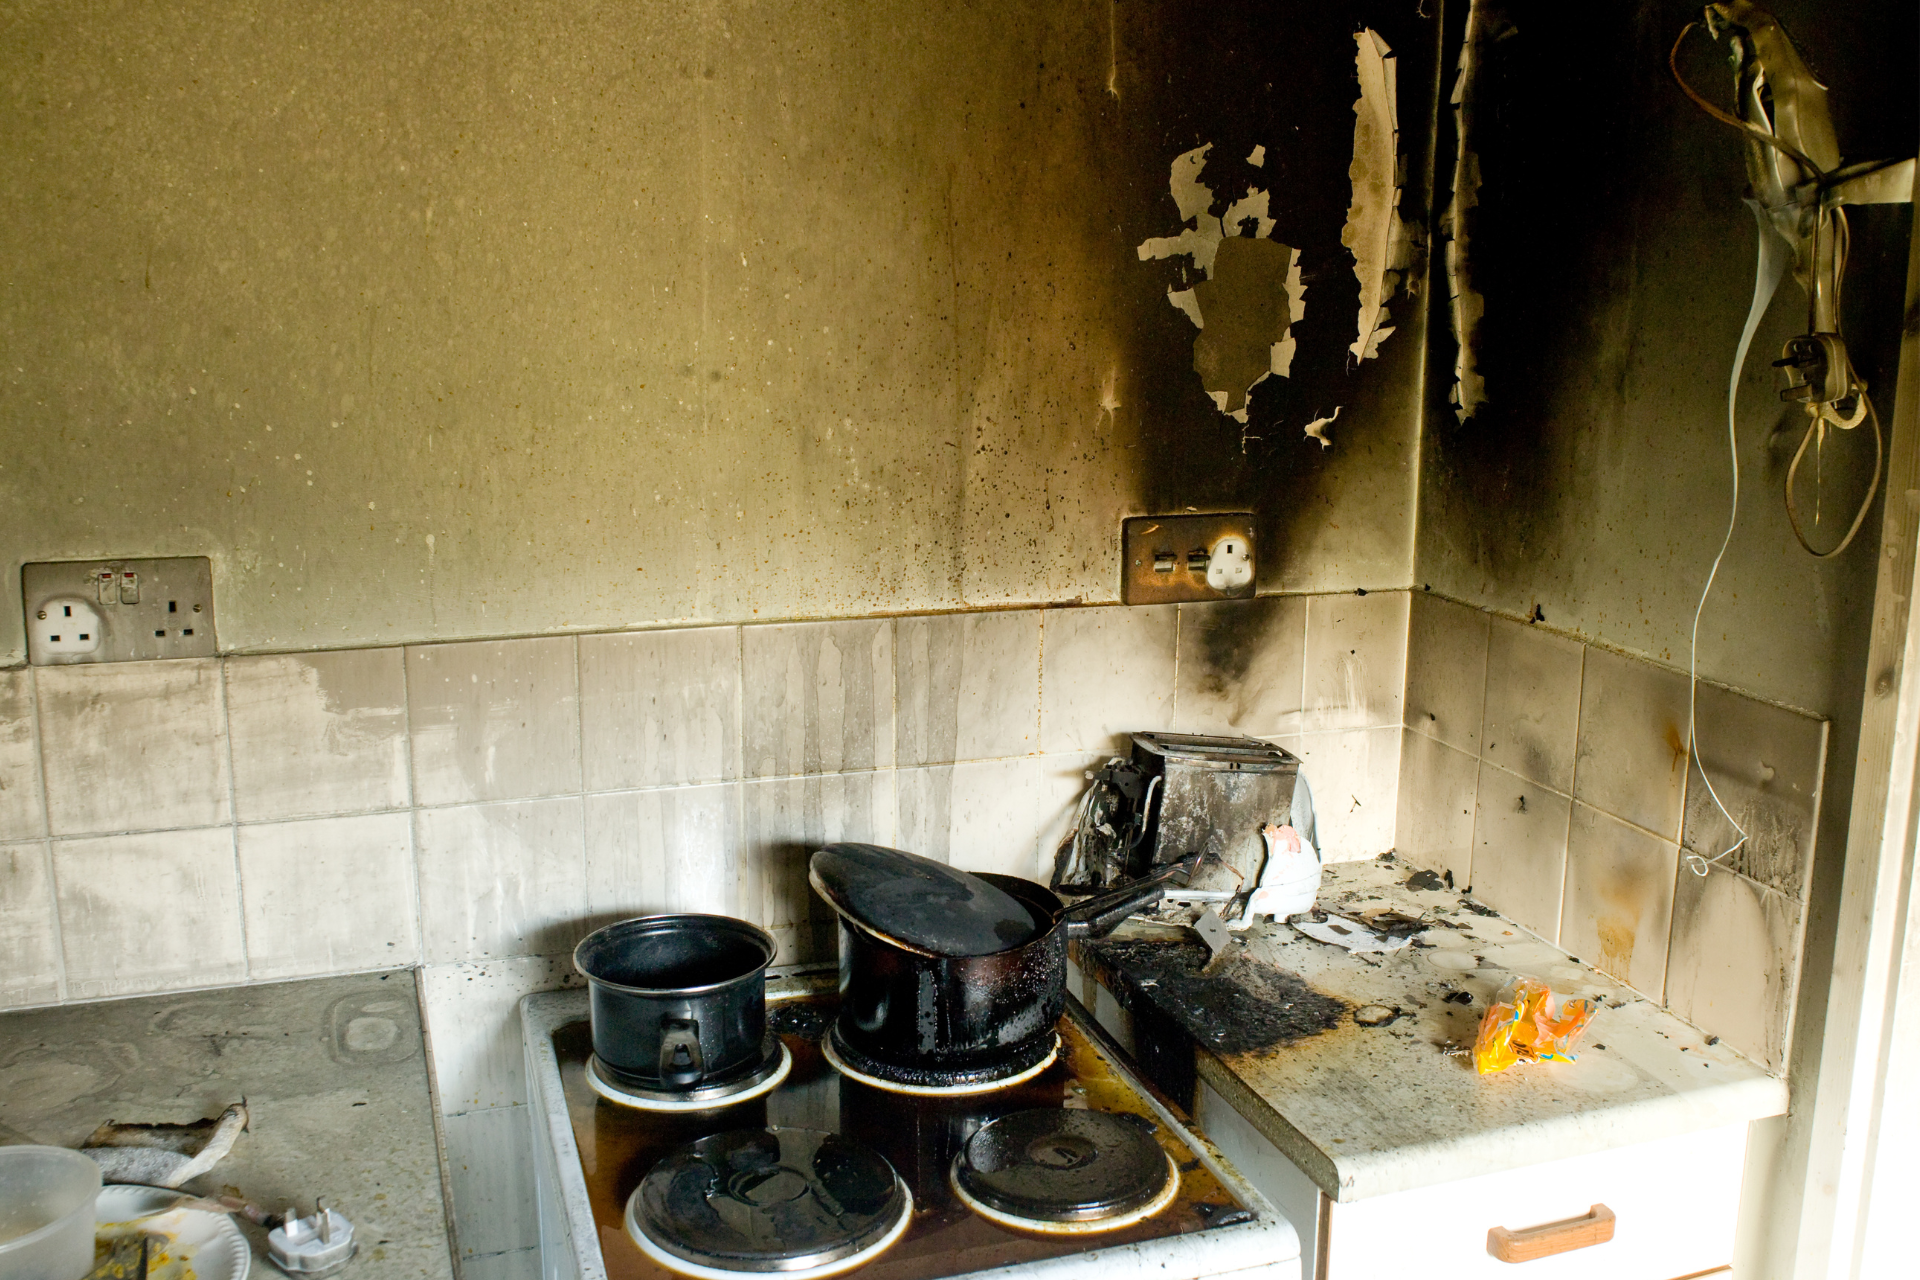 Kitchen fire damage